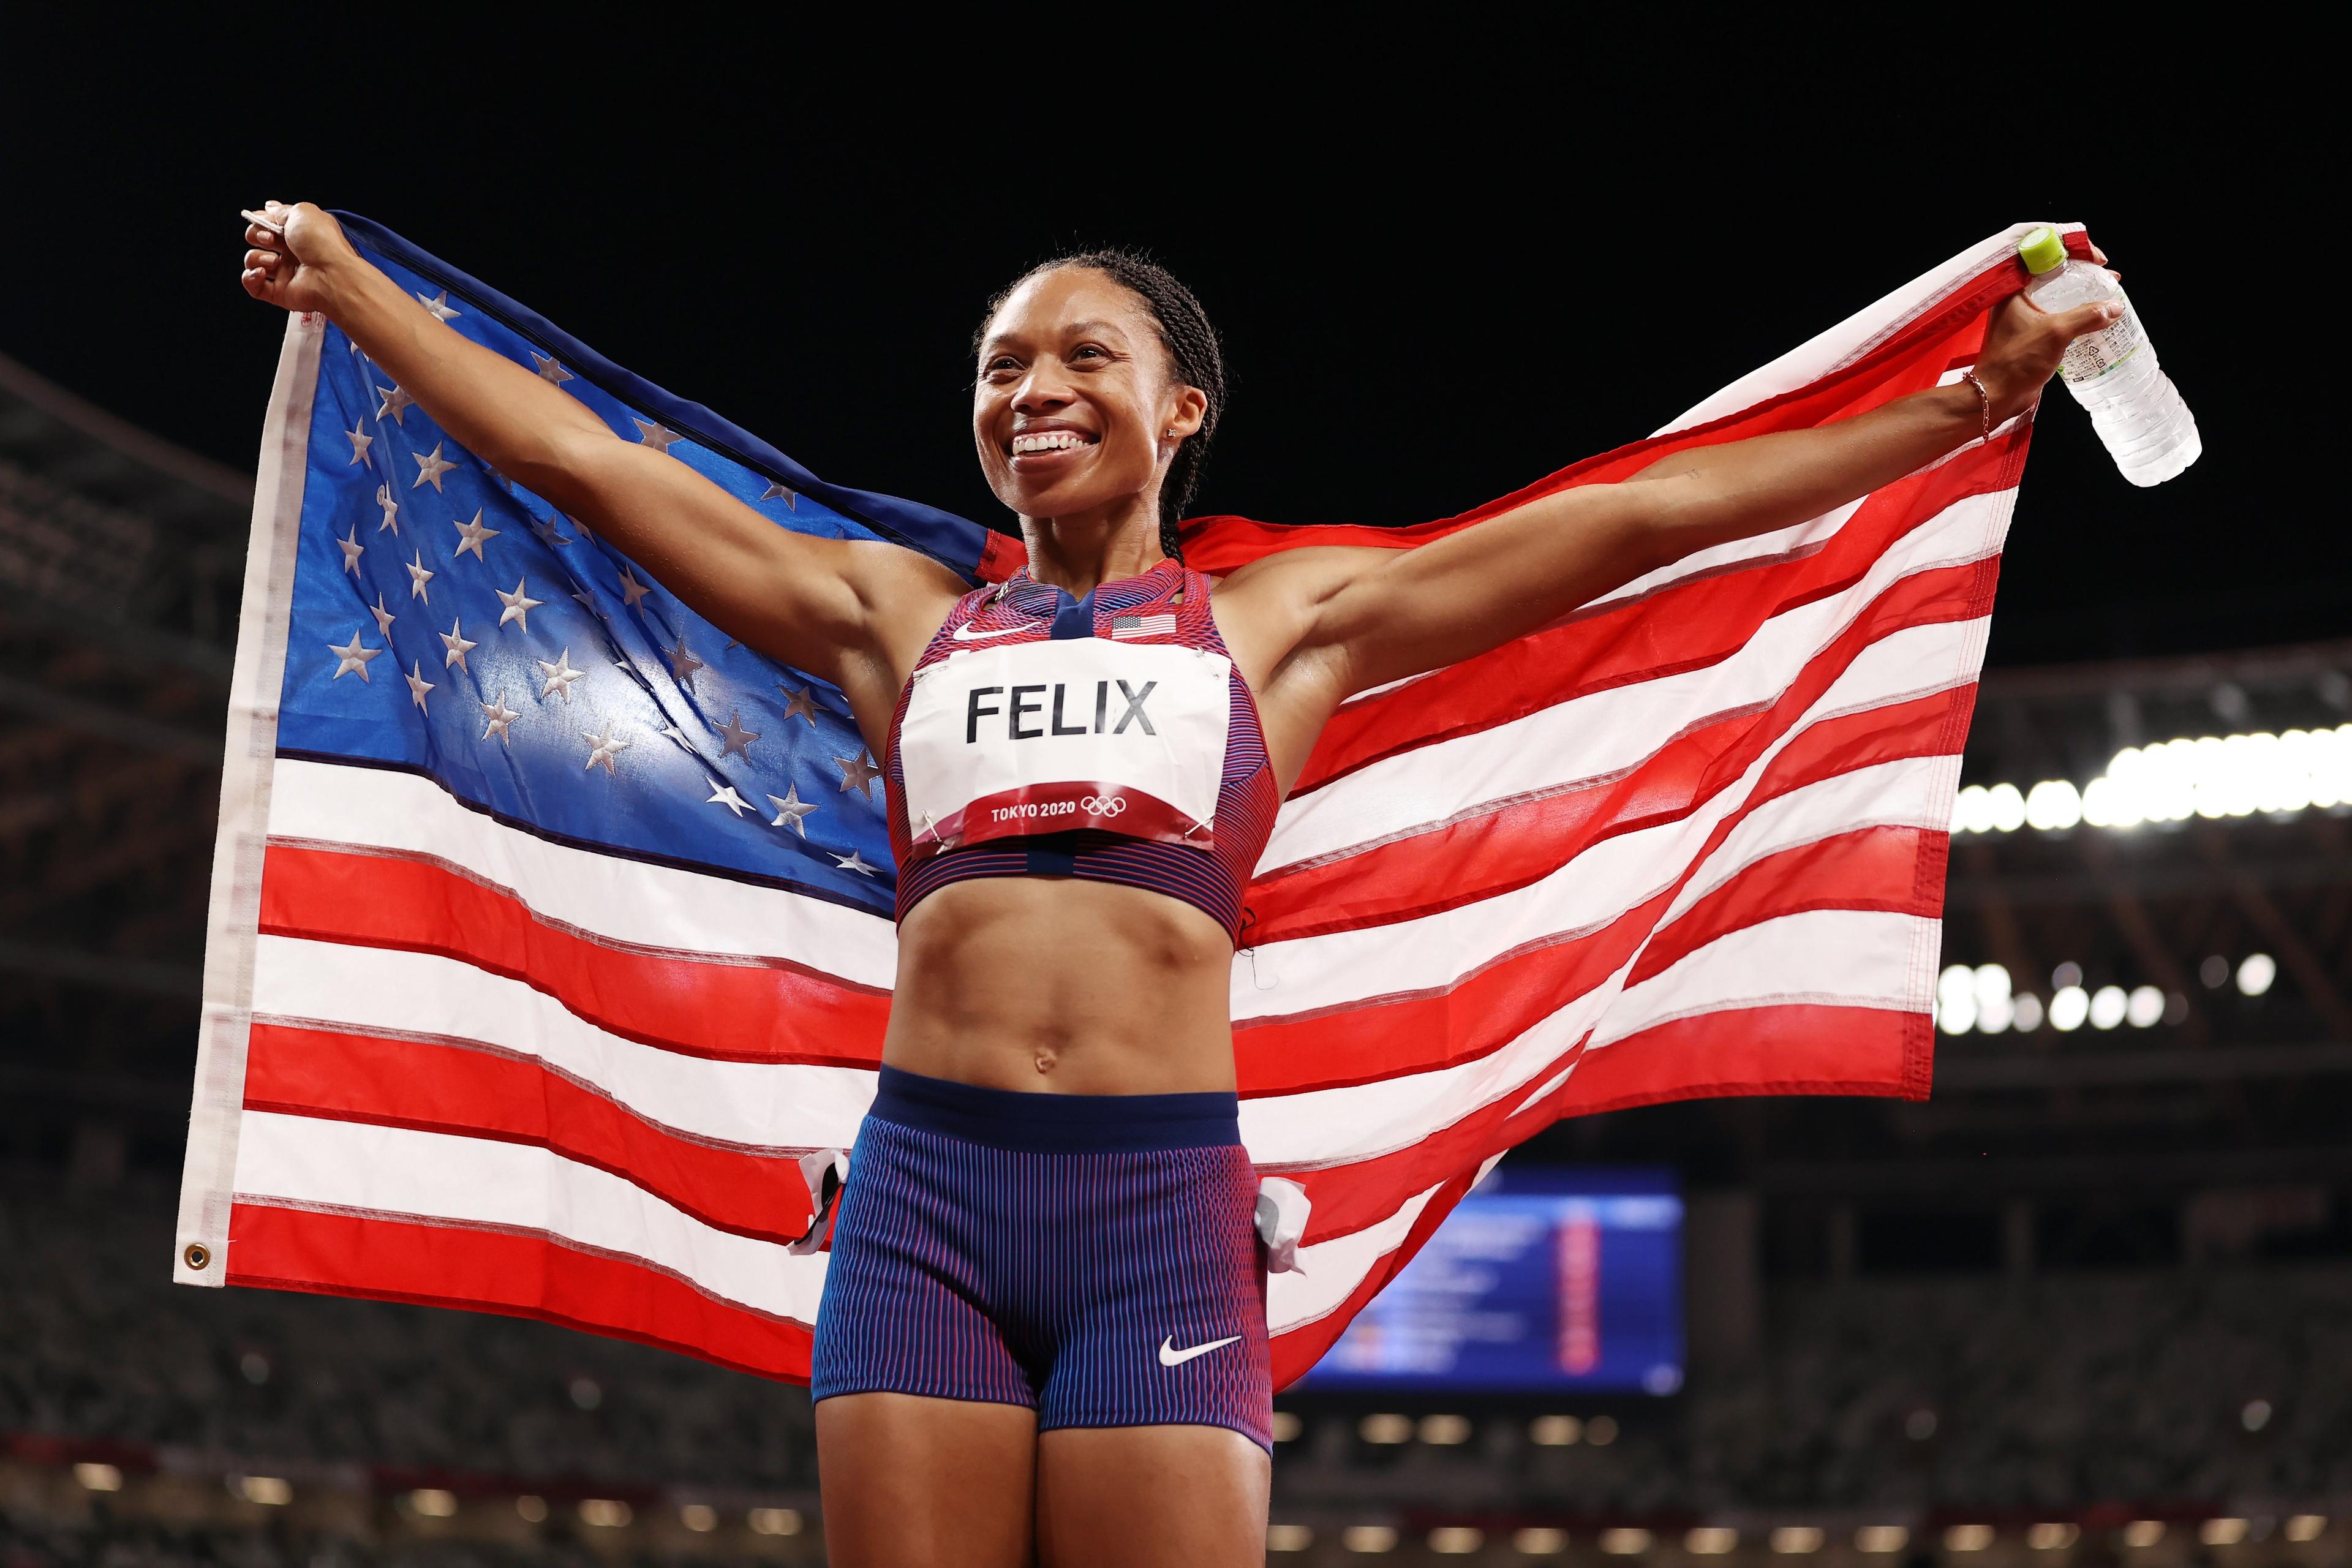 Fantastična Alison Feliks osvojila 19. medalju na Svjetskim prvenstvima i oprostila se od atletike